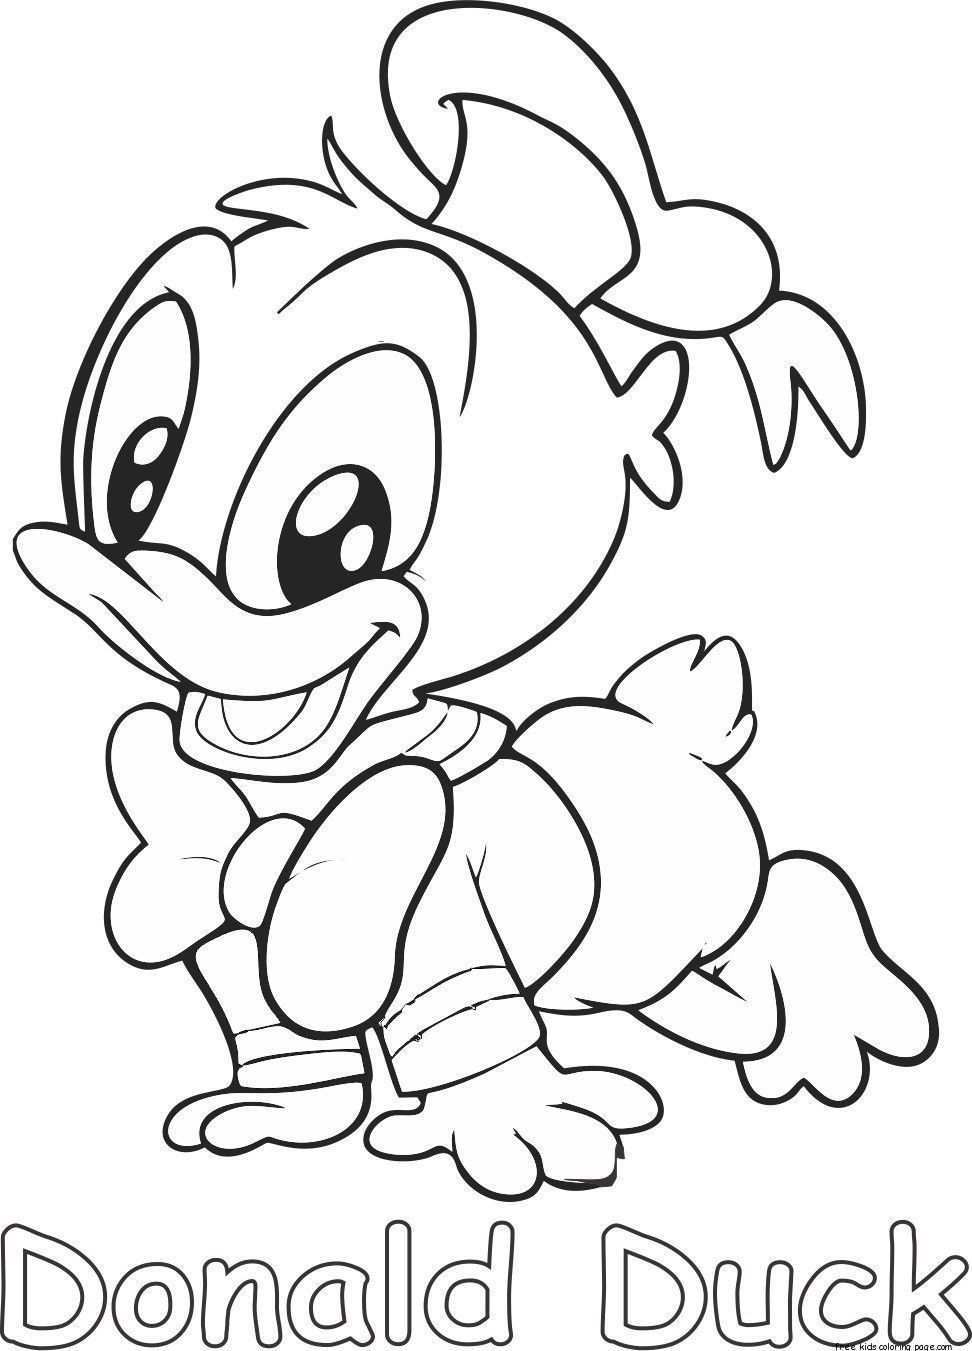 Donald Duck Baby Kleurplaat Laat Je Kinderen Genieten Van Het Niewu Kleurplaat Donald